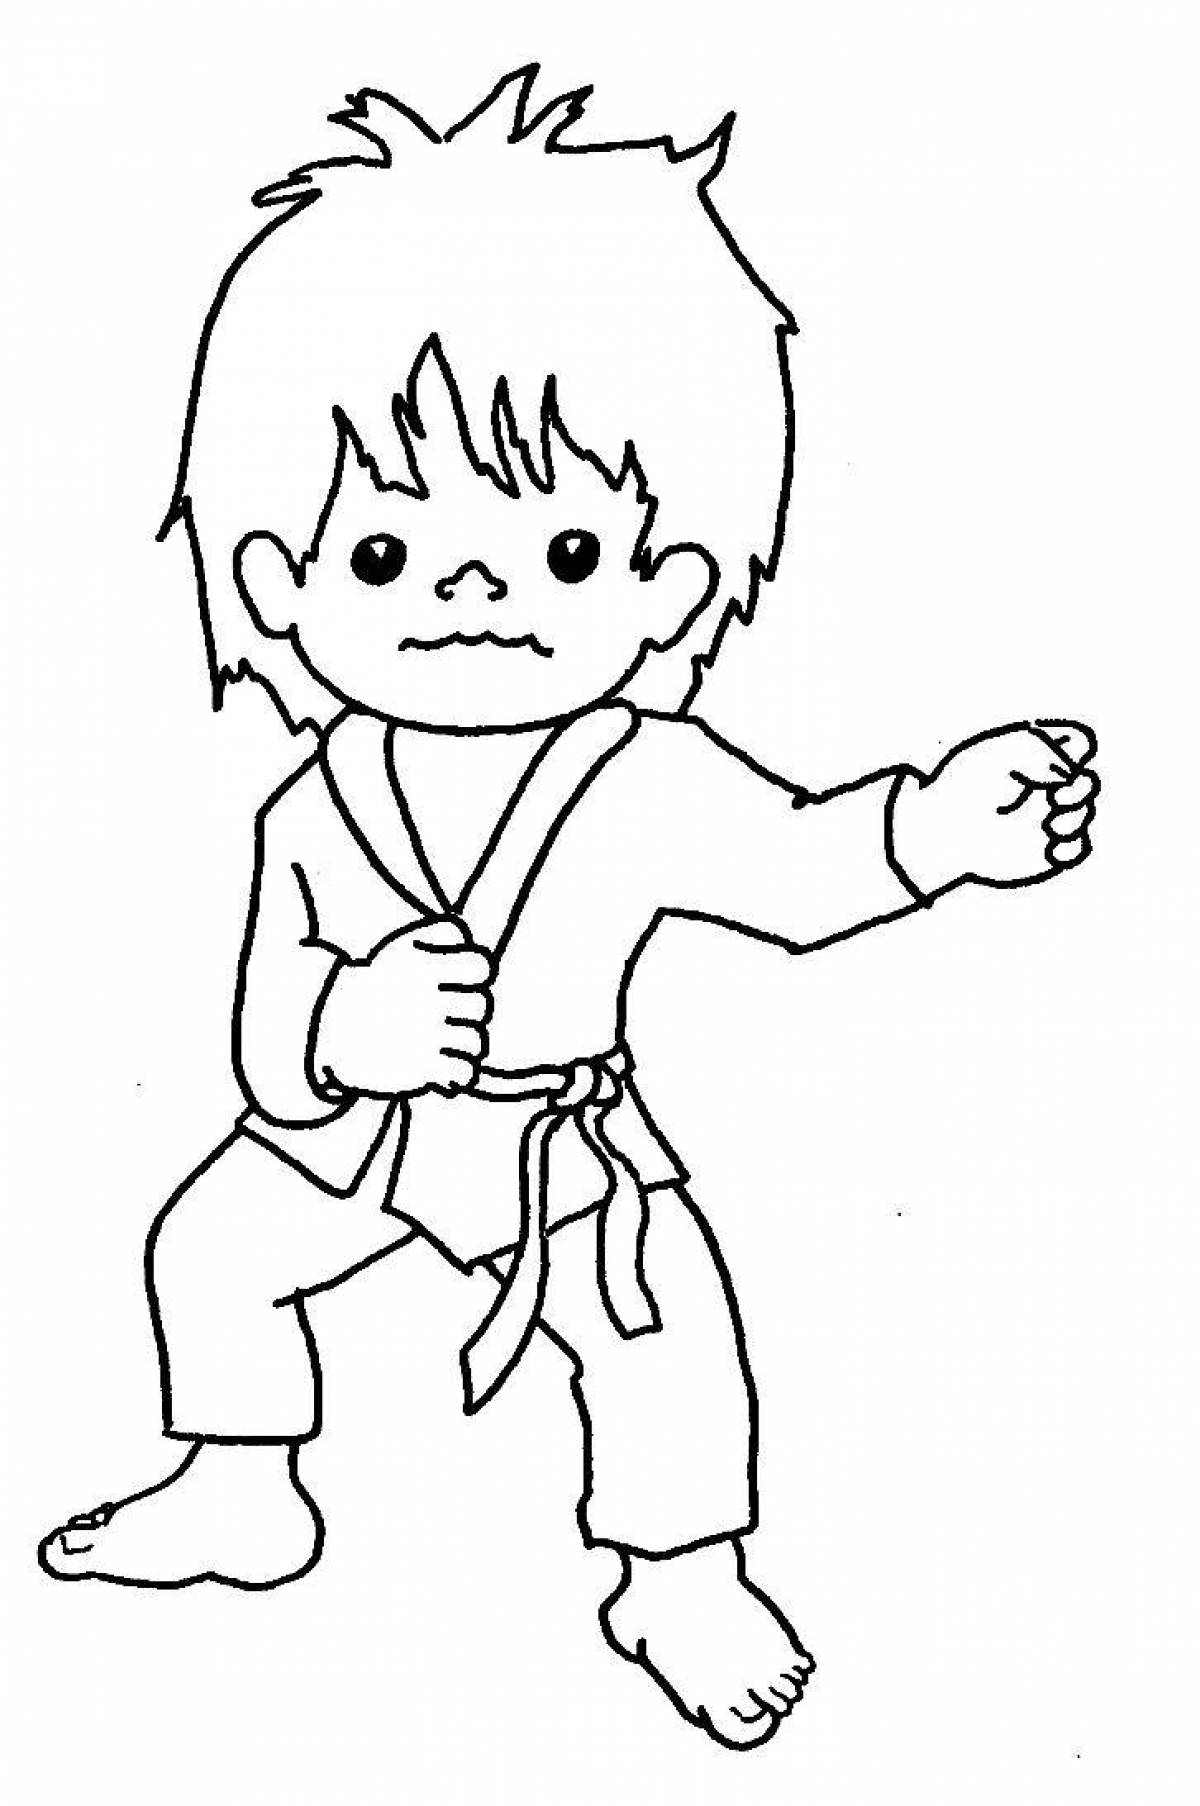 Karate fun coloring book for kids